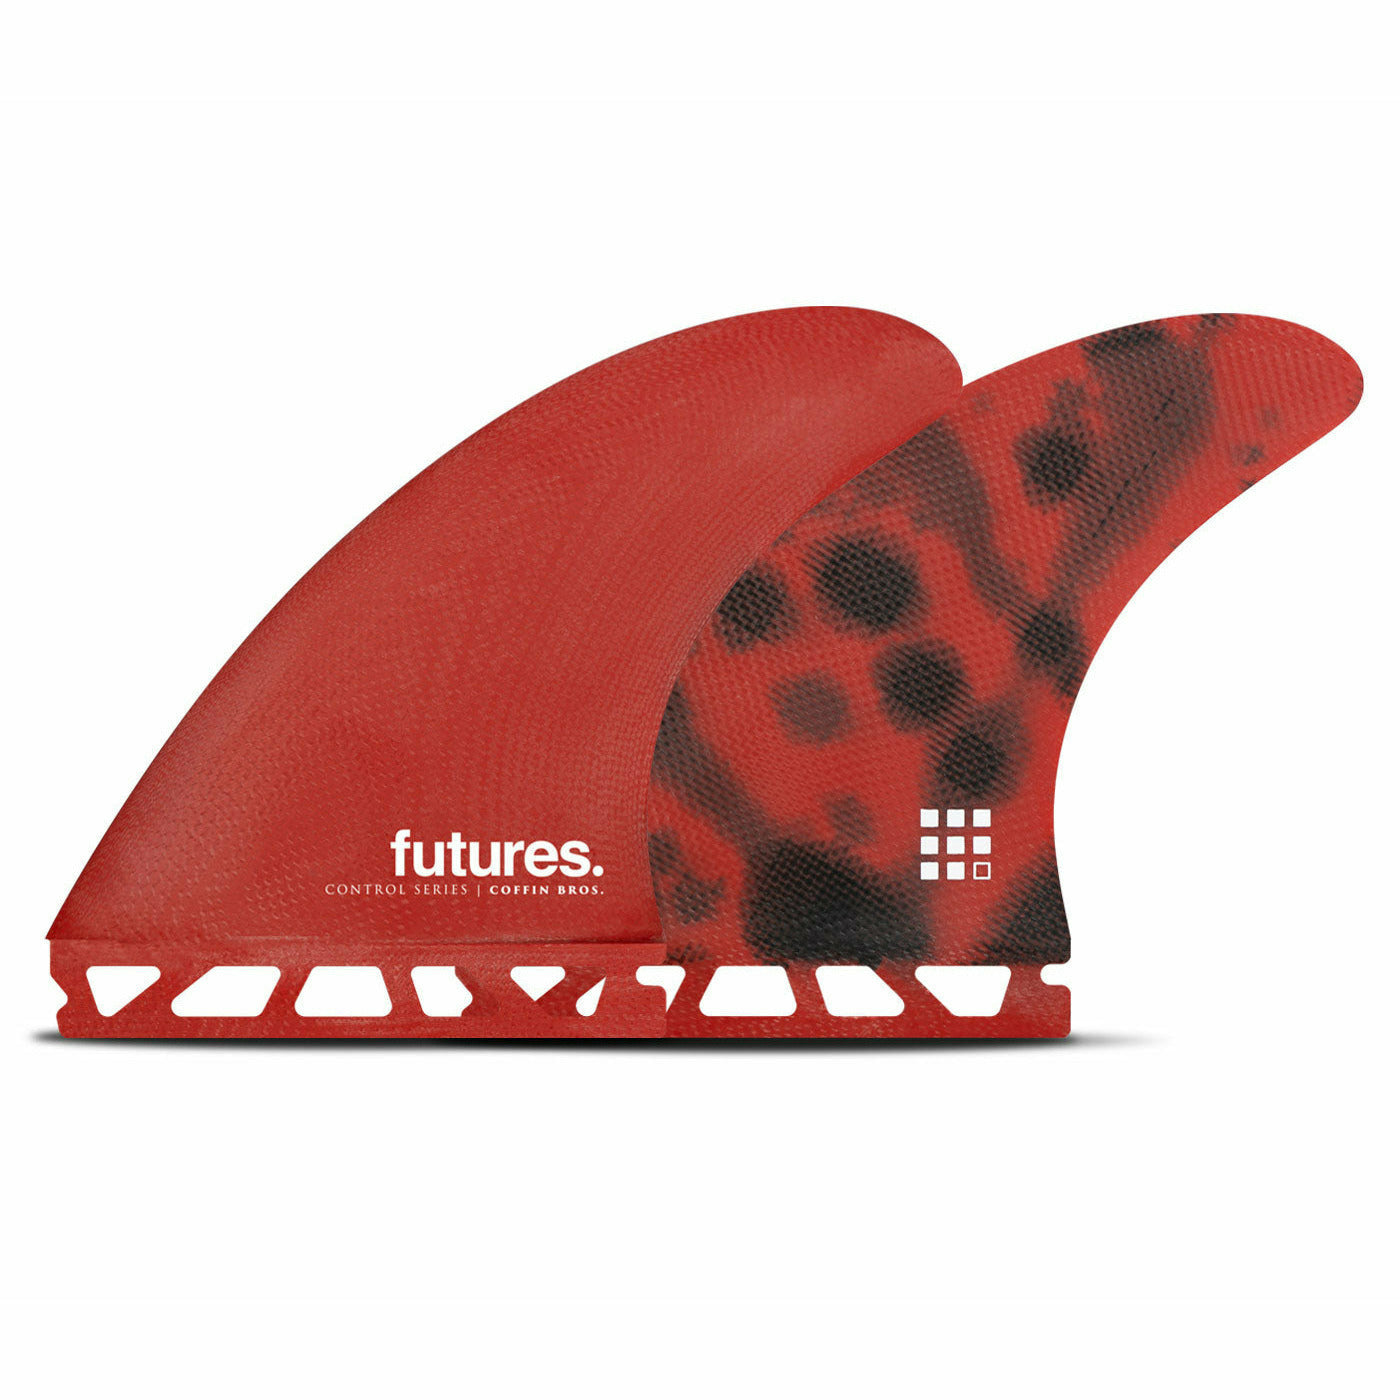 Futures - COFFIN BROS Control Series  - Medium (Red/Black)